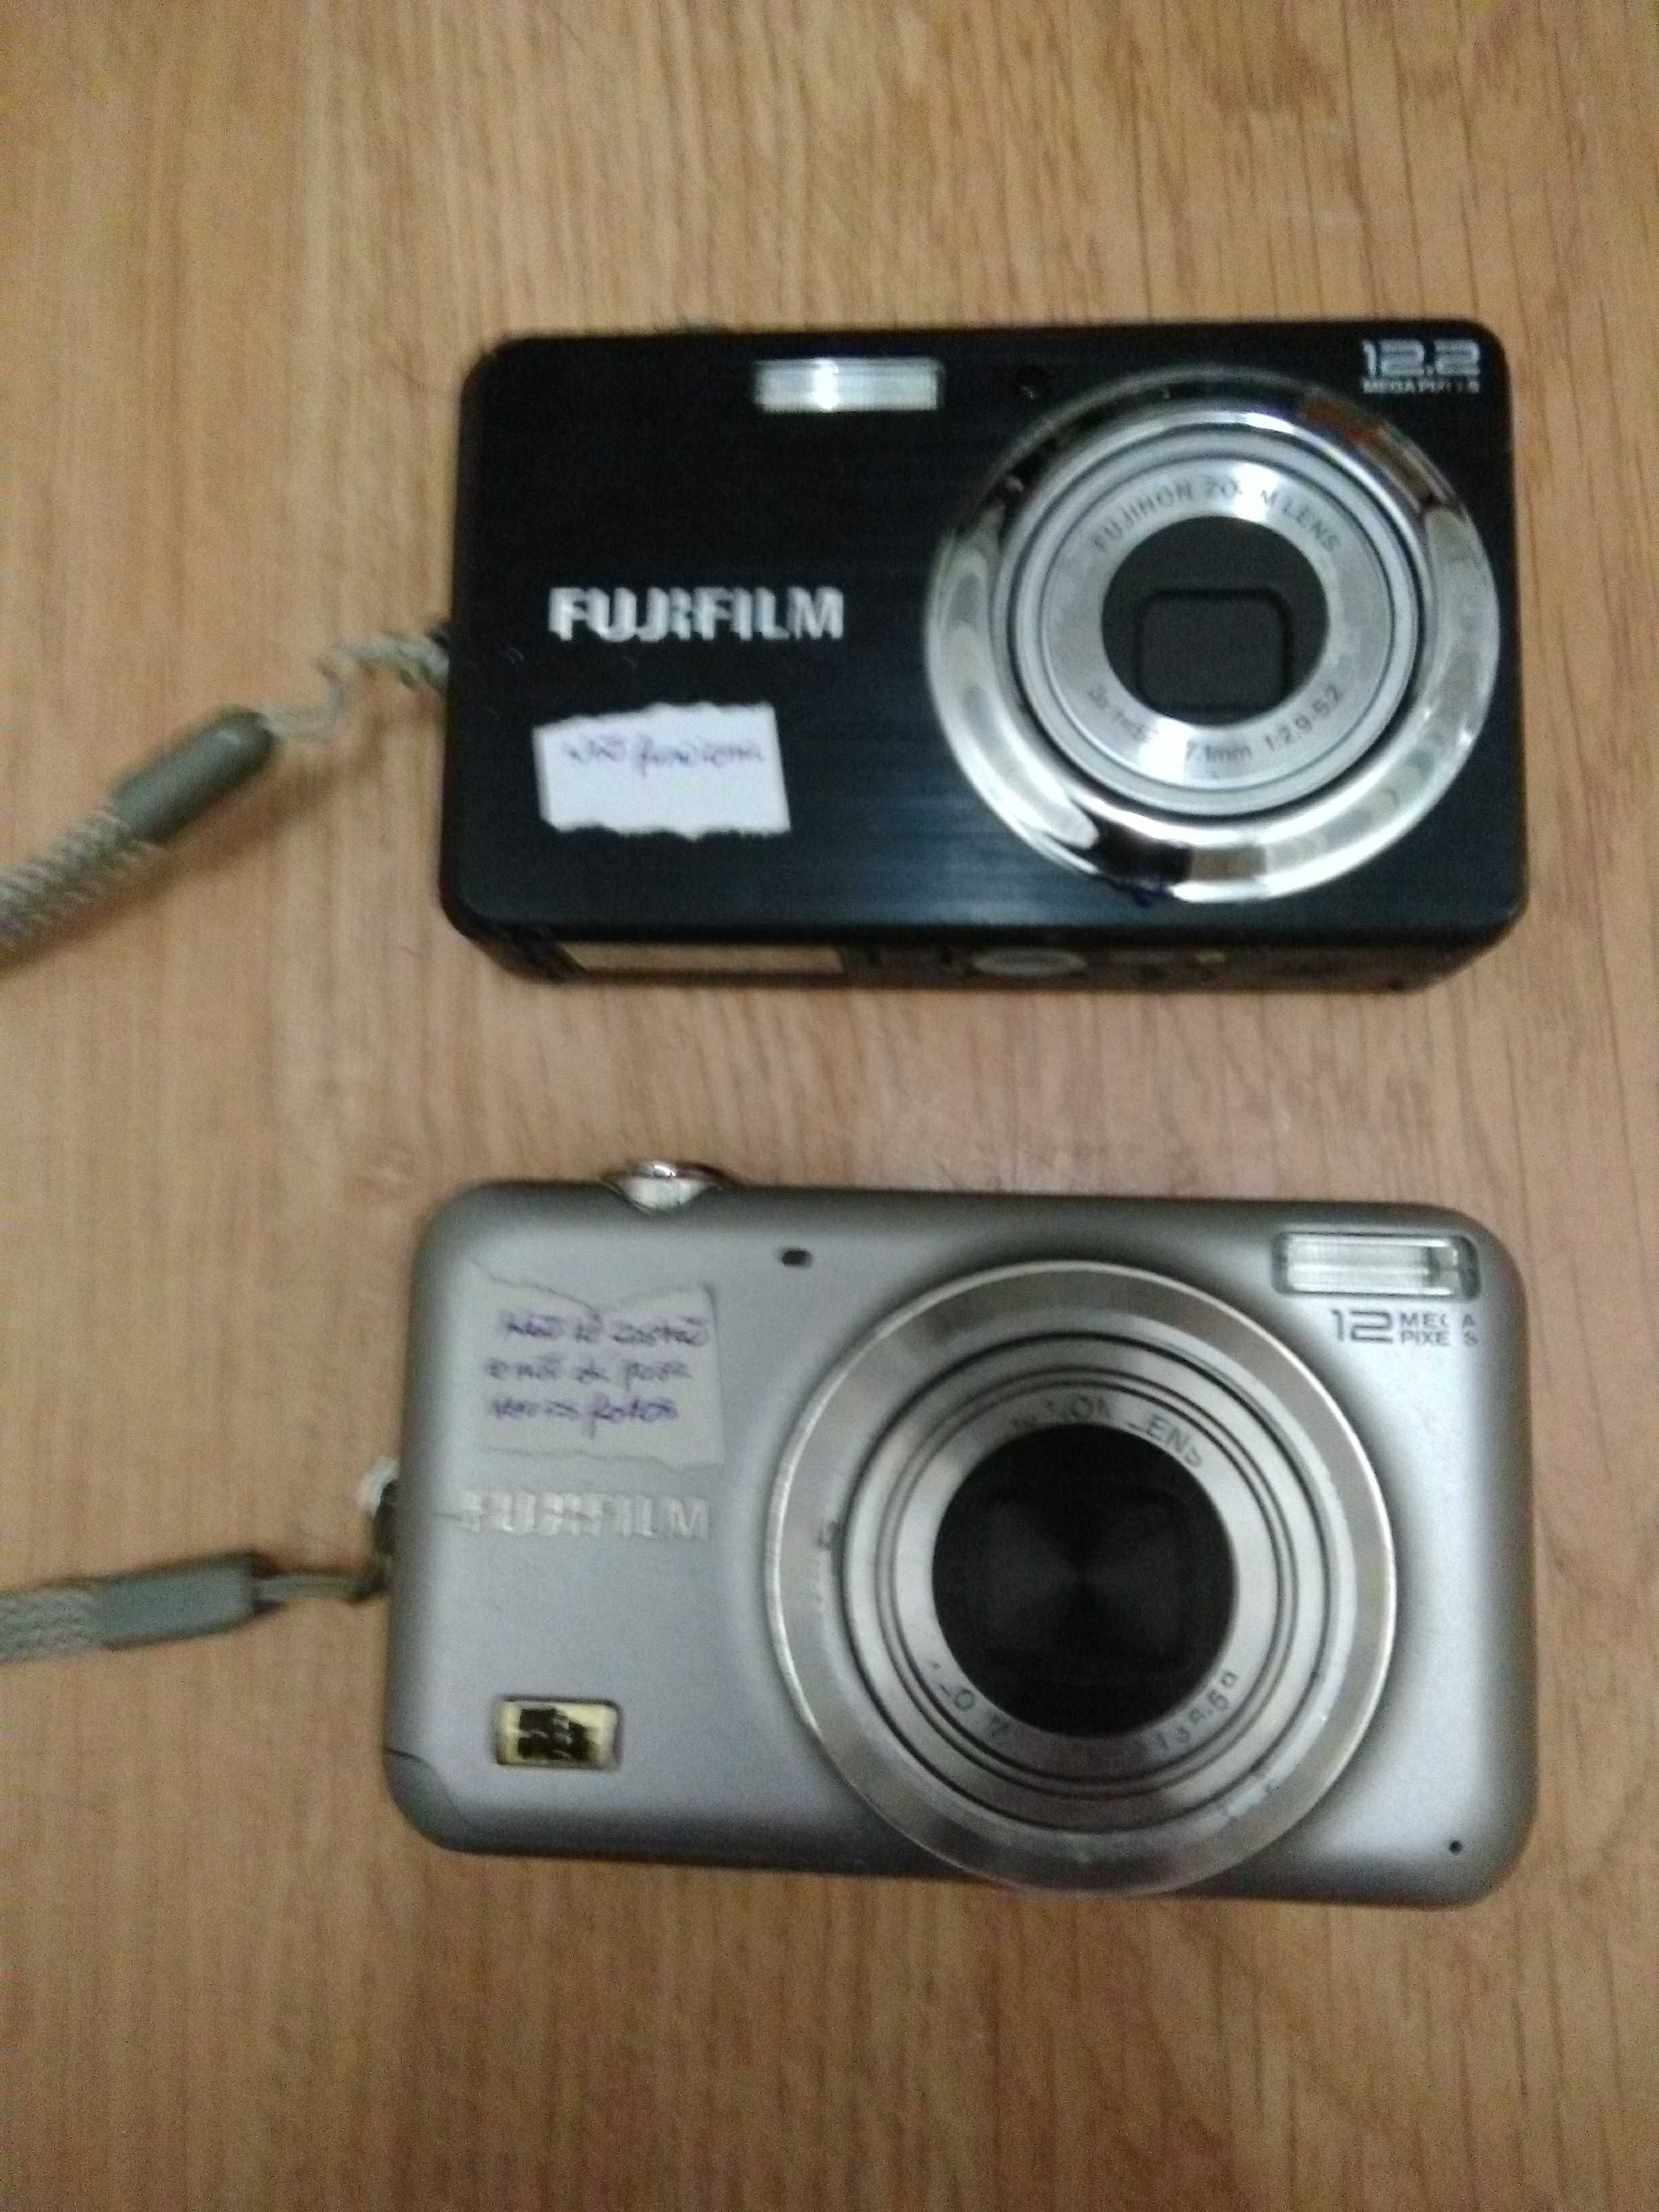 Maquinas fotográficas fujifilm. Vendo ou troco.